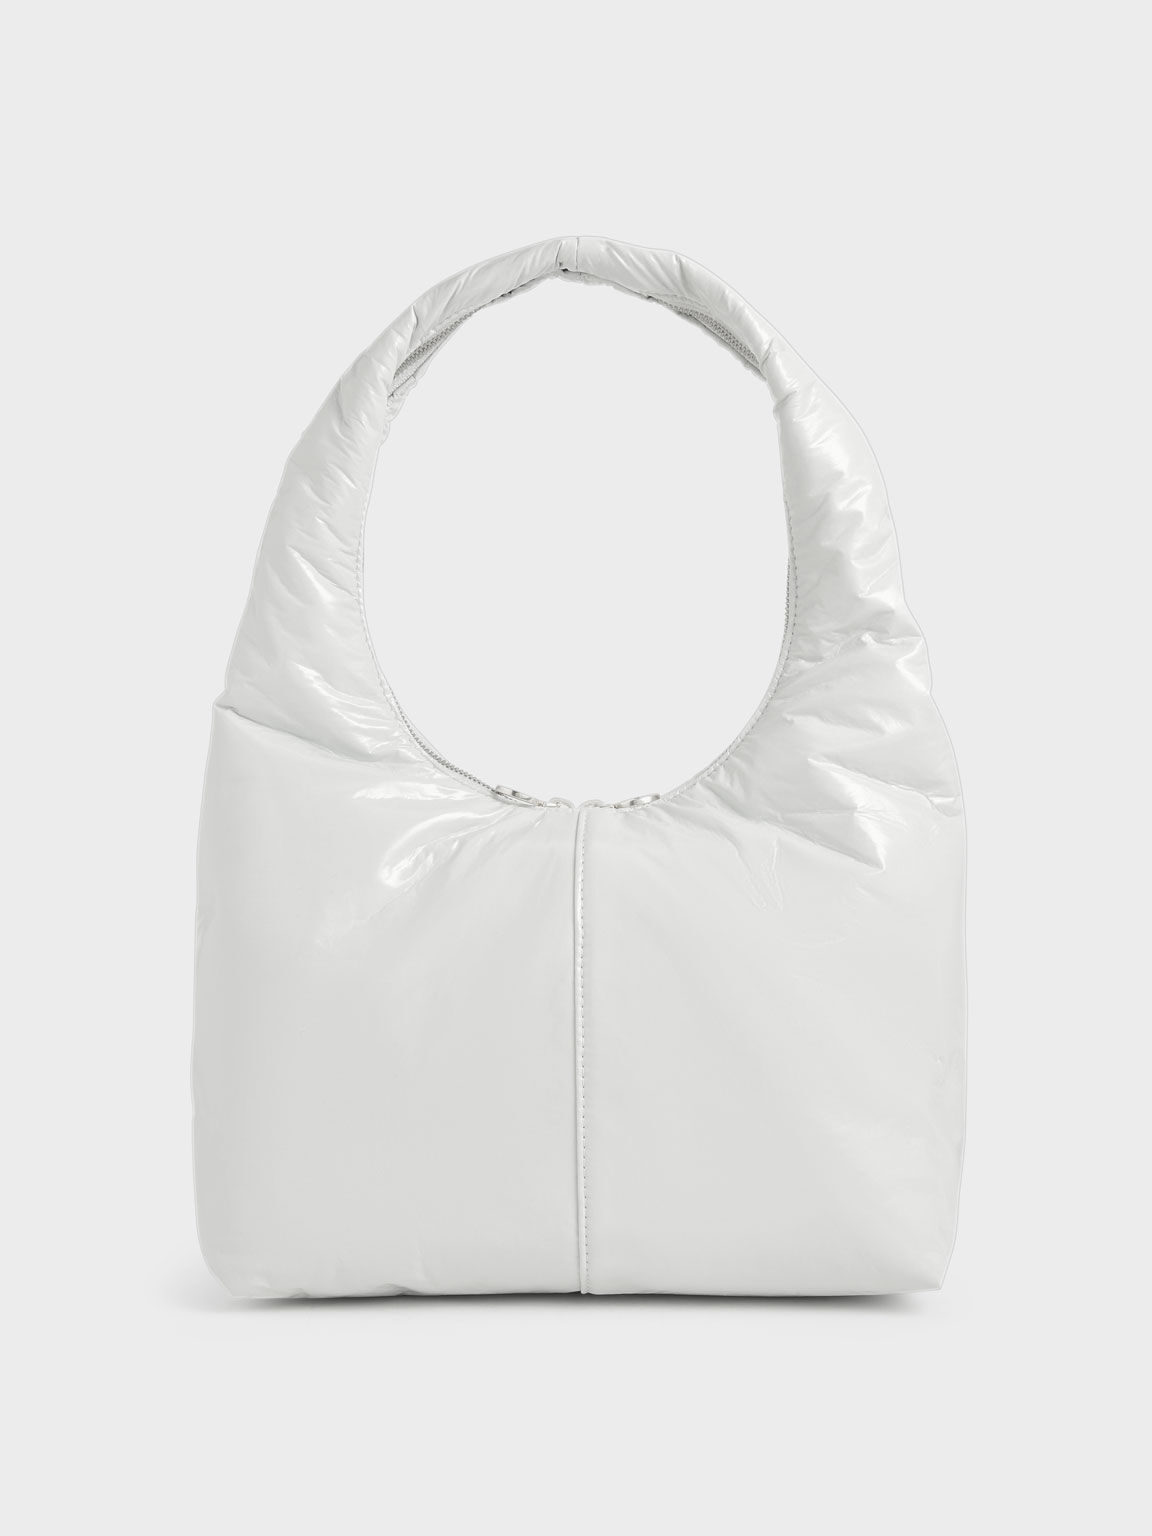 Arch Wrinkled-Effect Large Hobo Bag, White, hi-res